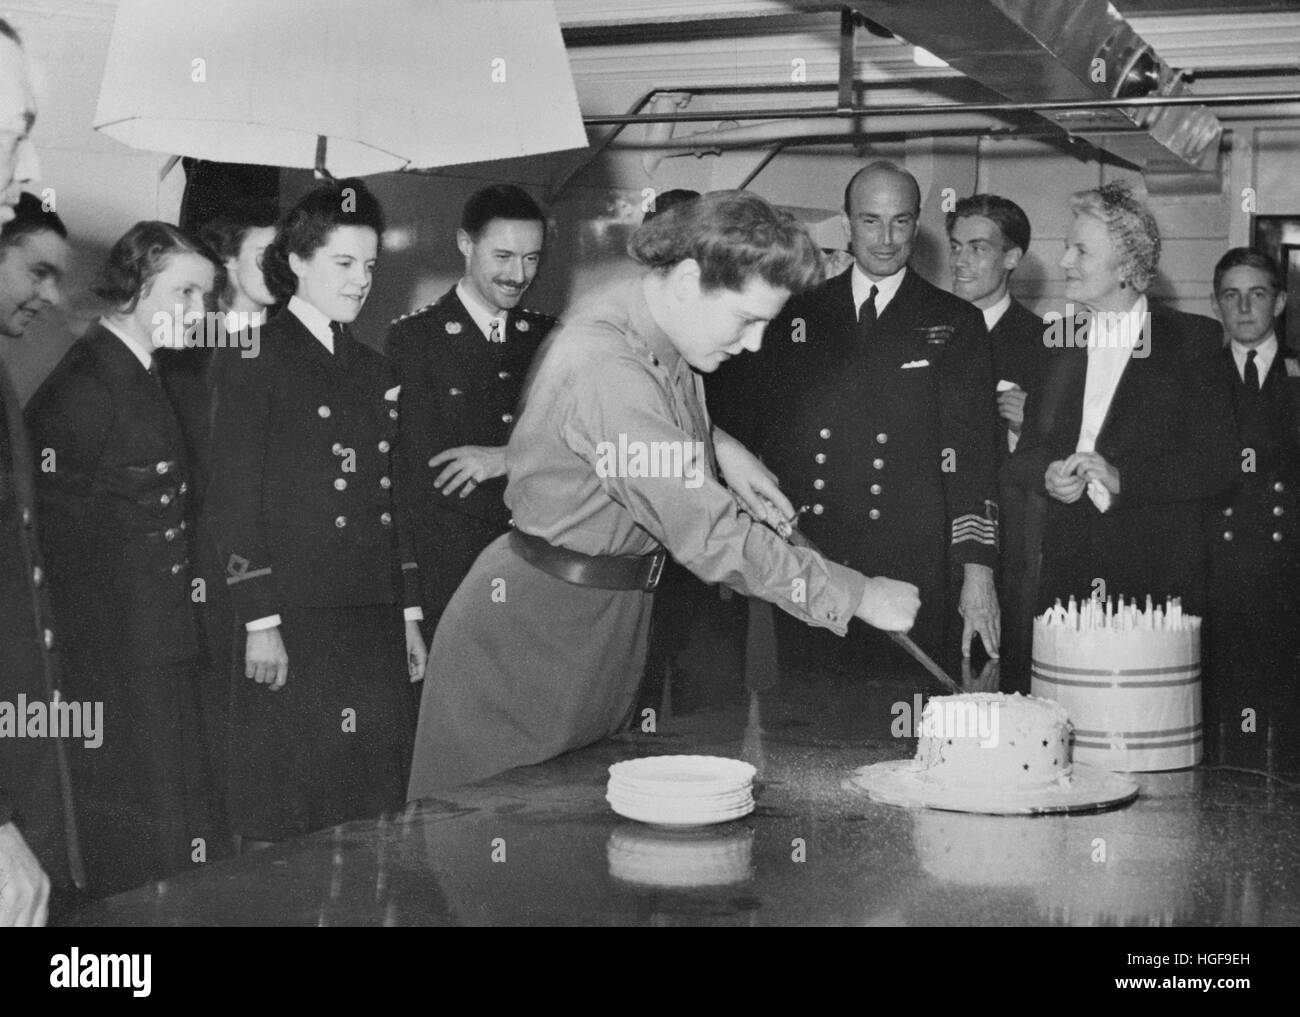 Mary, Tochter von Winston Churchill, schneidet Kuchen zu ihrem 21. Geburtstag. Ihre Mutter, Clementine auf ihrer linken Seite stehend. HMS RENOWN. September 1943 Stockfoto